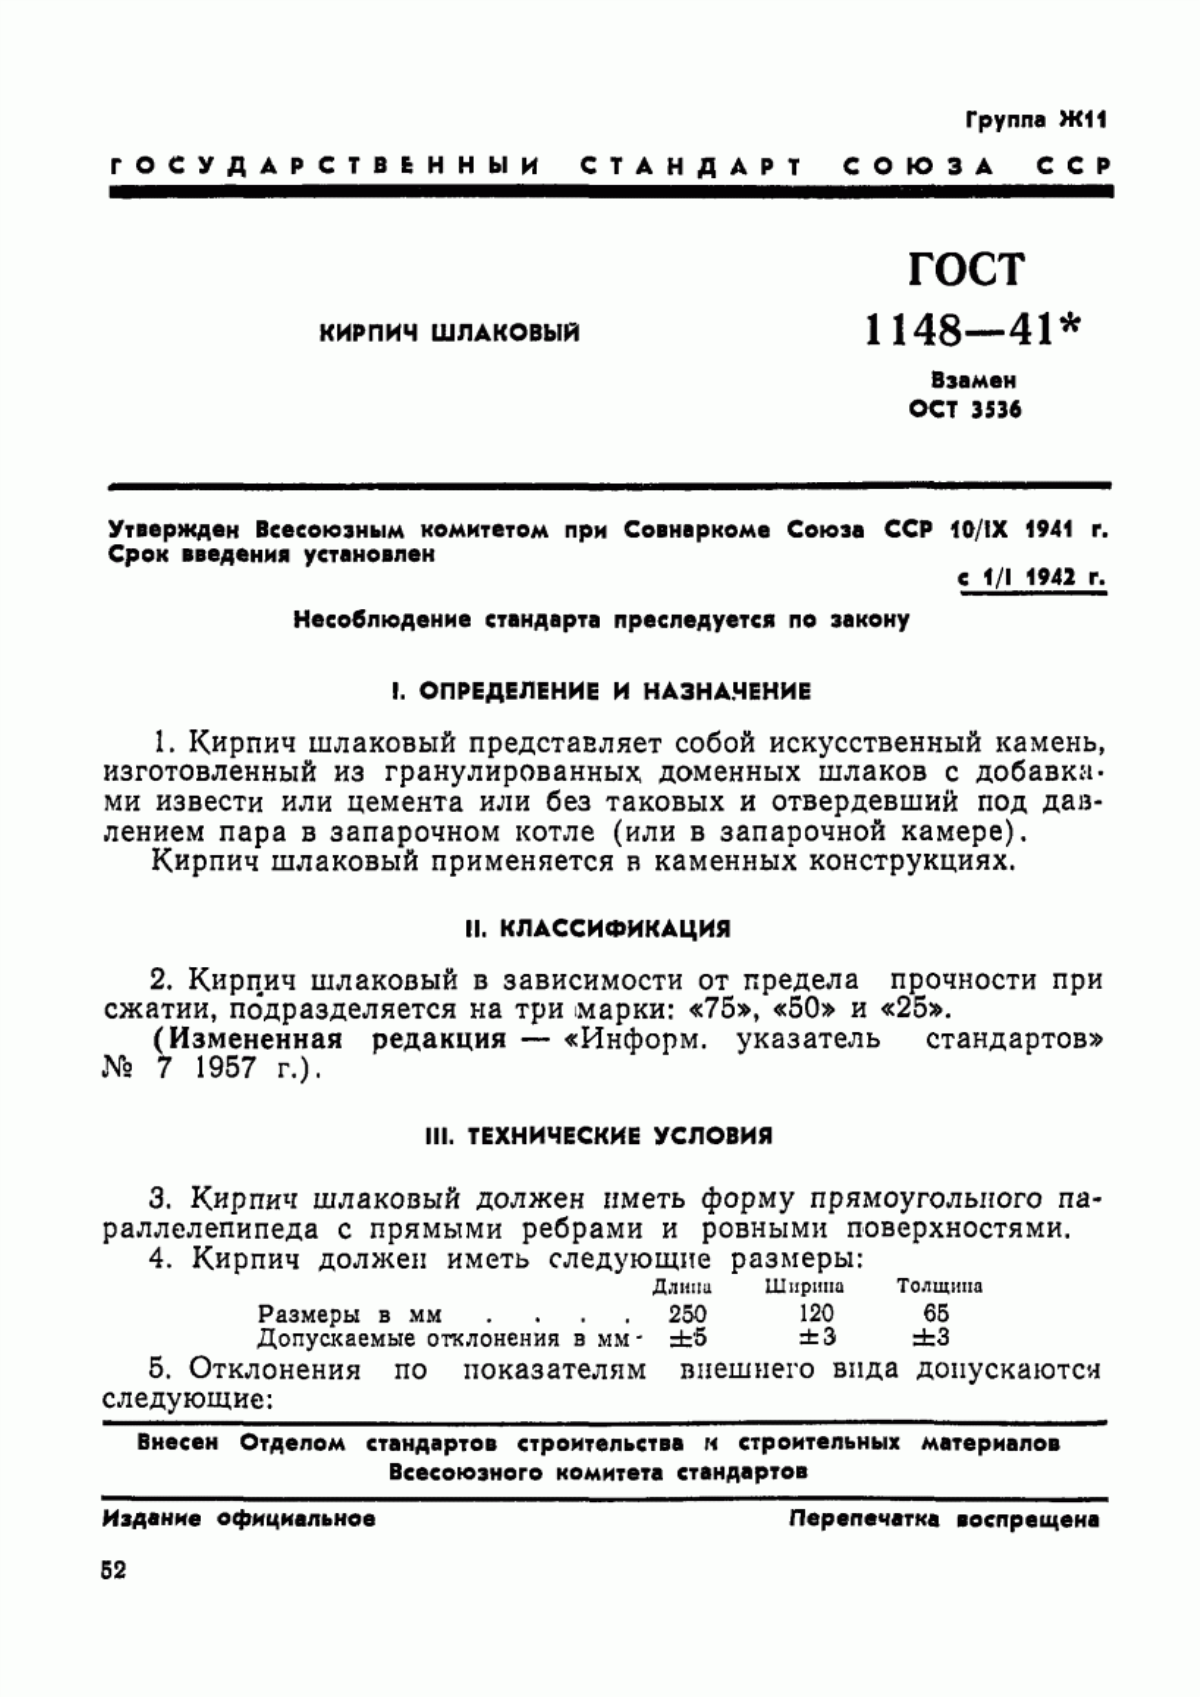 ГОСТ 1148-41 Кирпич шлаковый